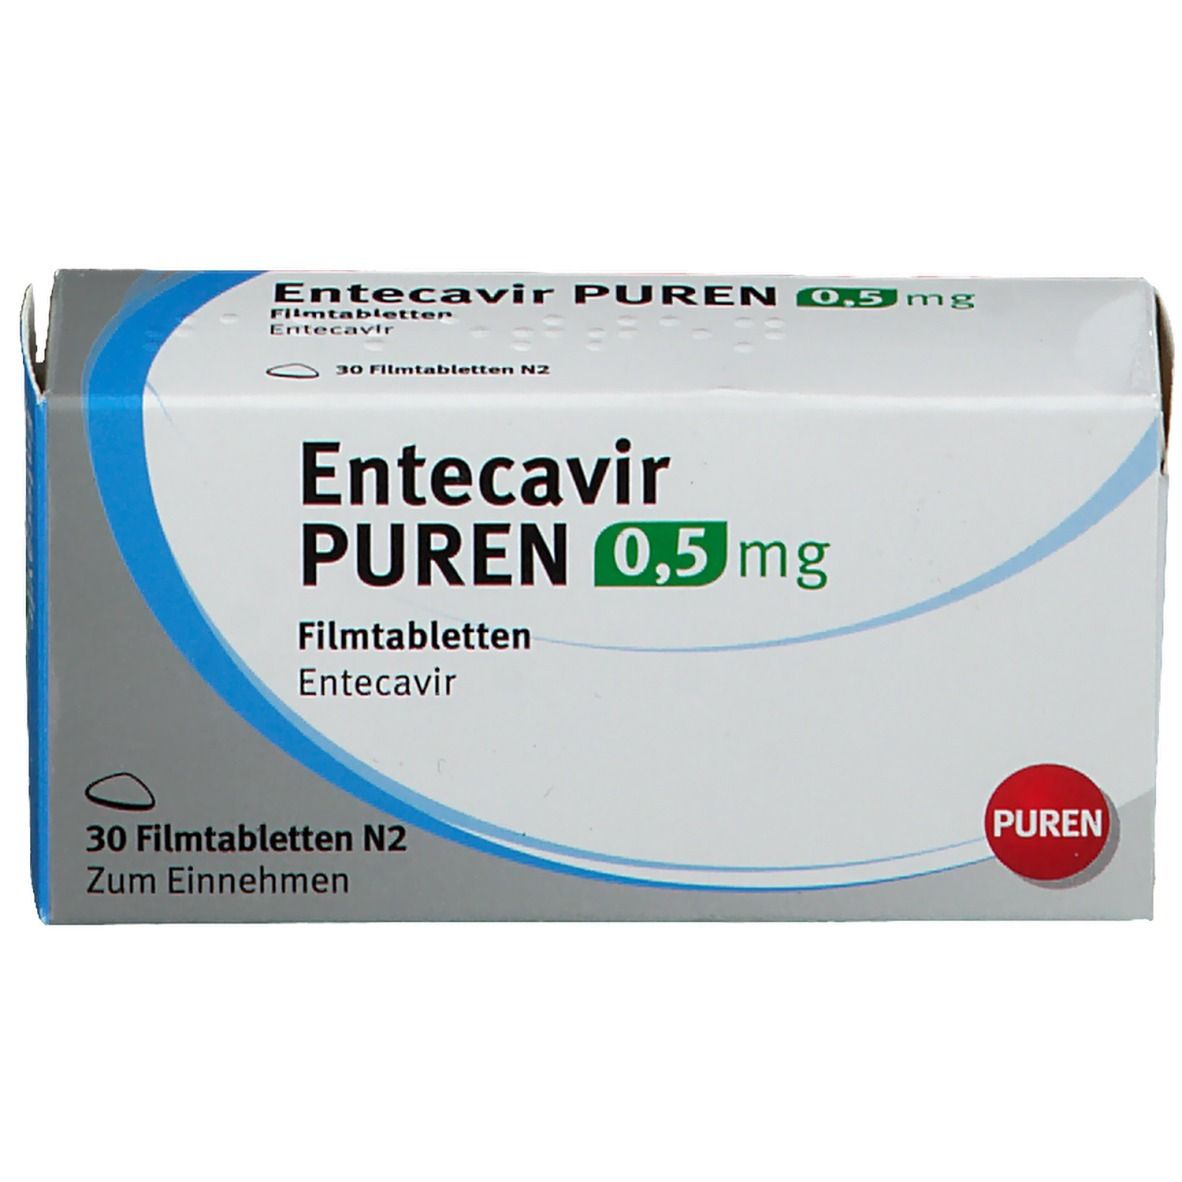 Entecavir PUREN 0,5 mg